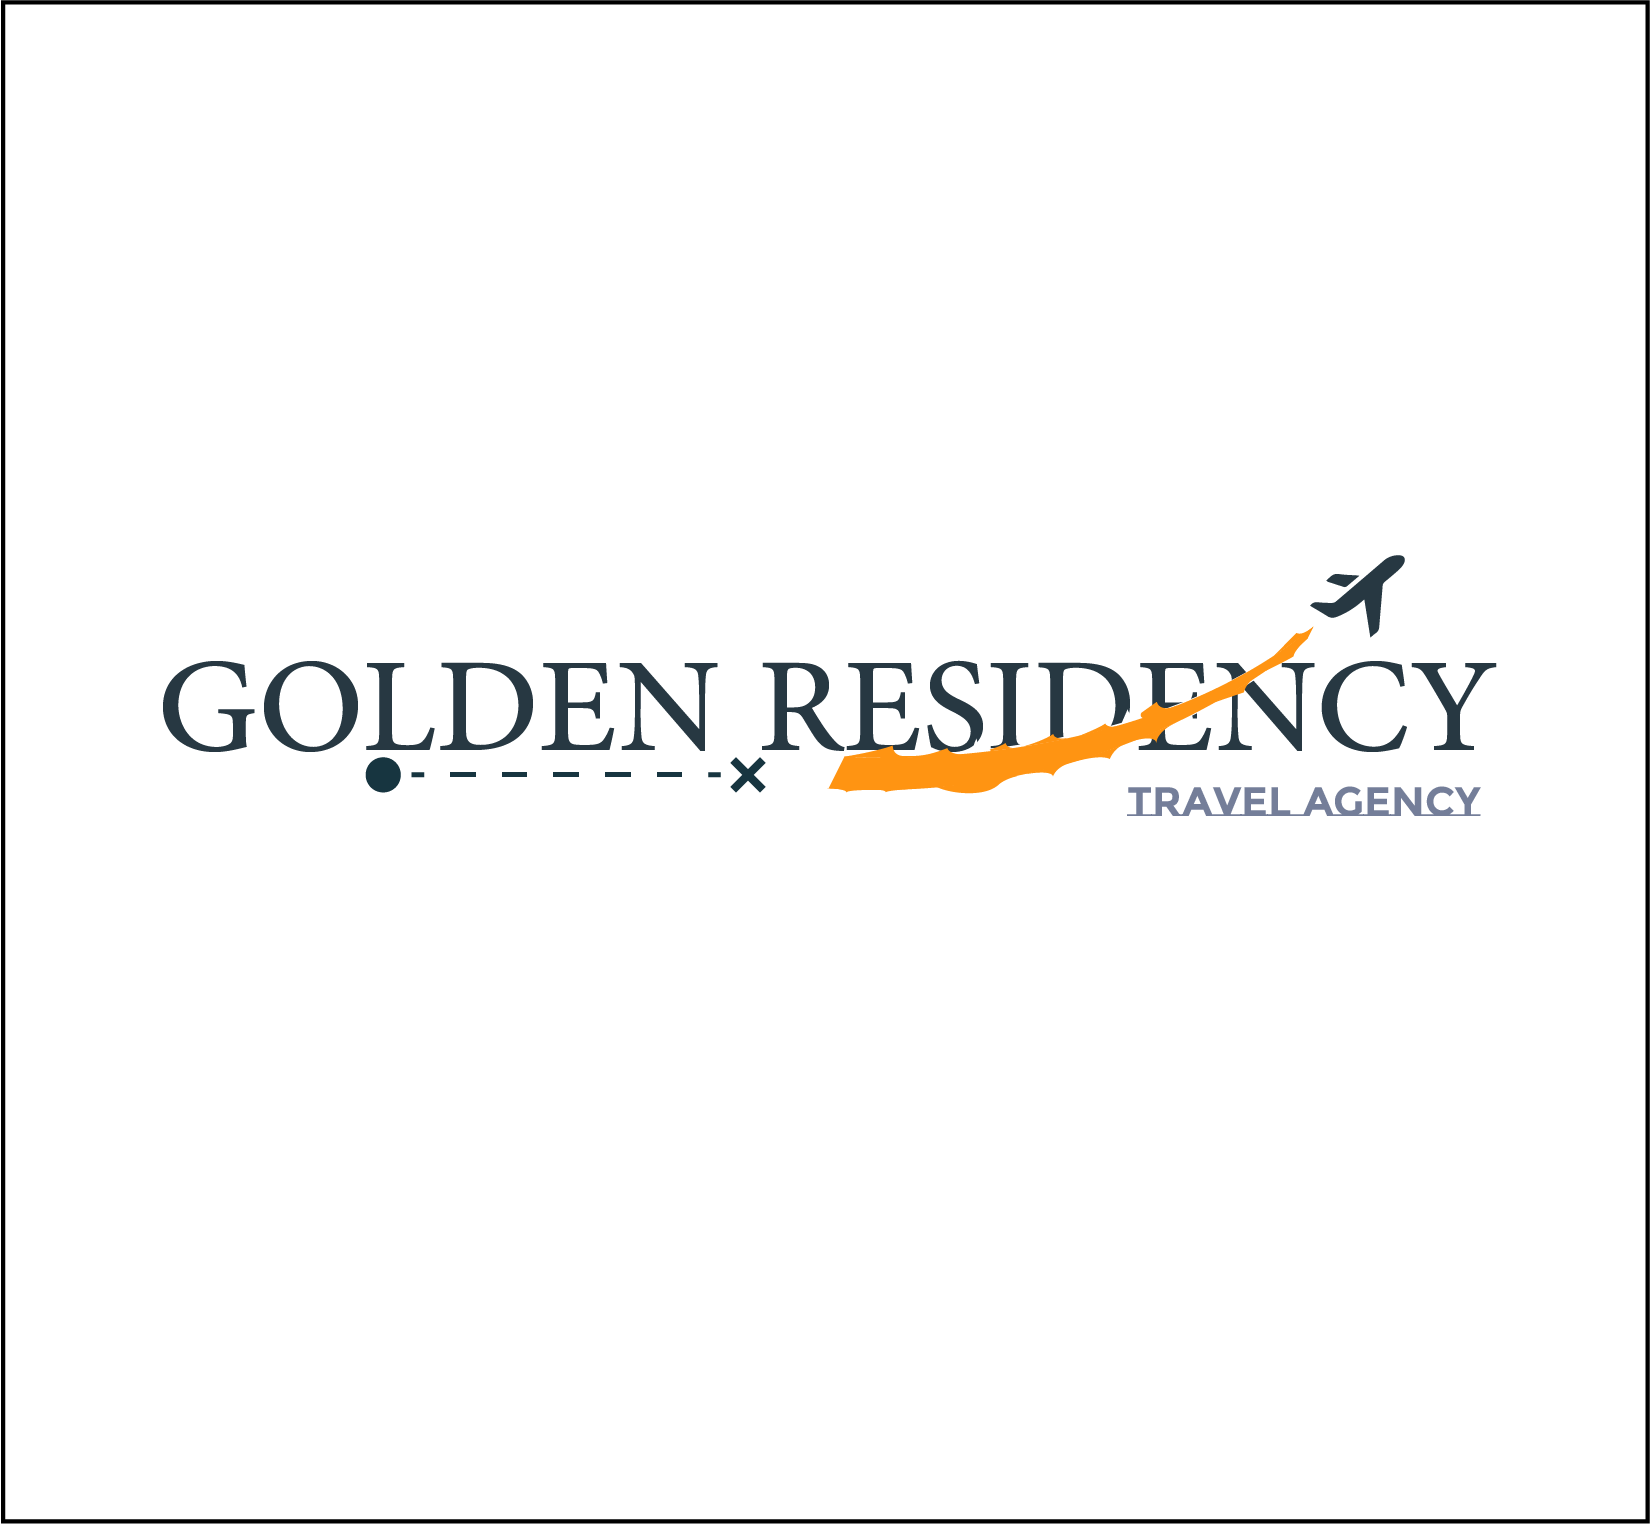 golden star travel agency